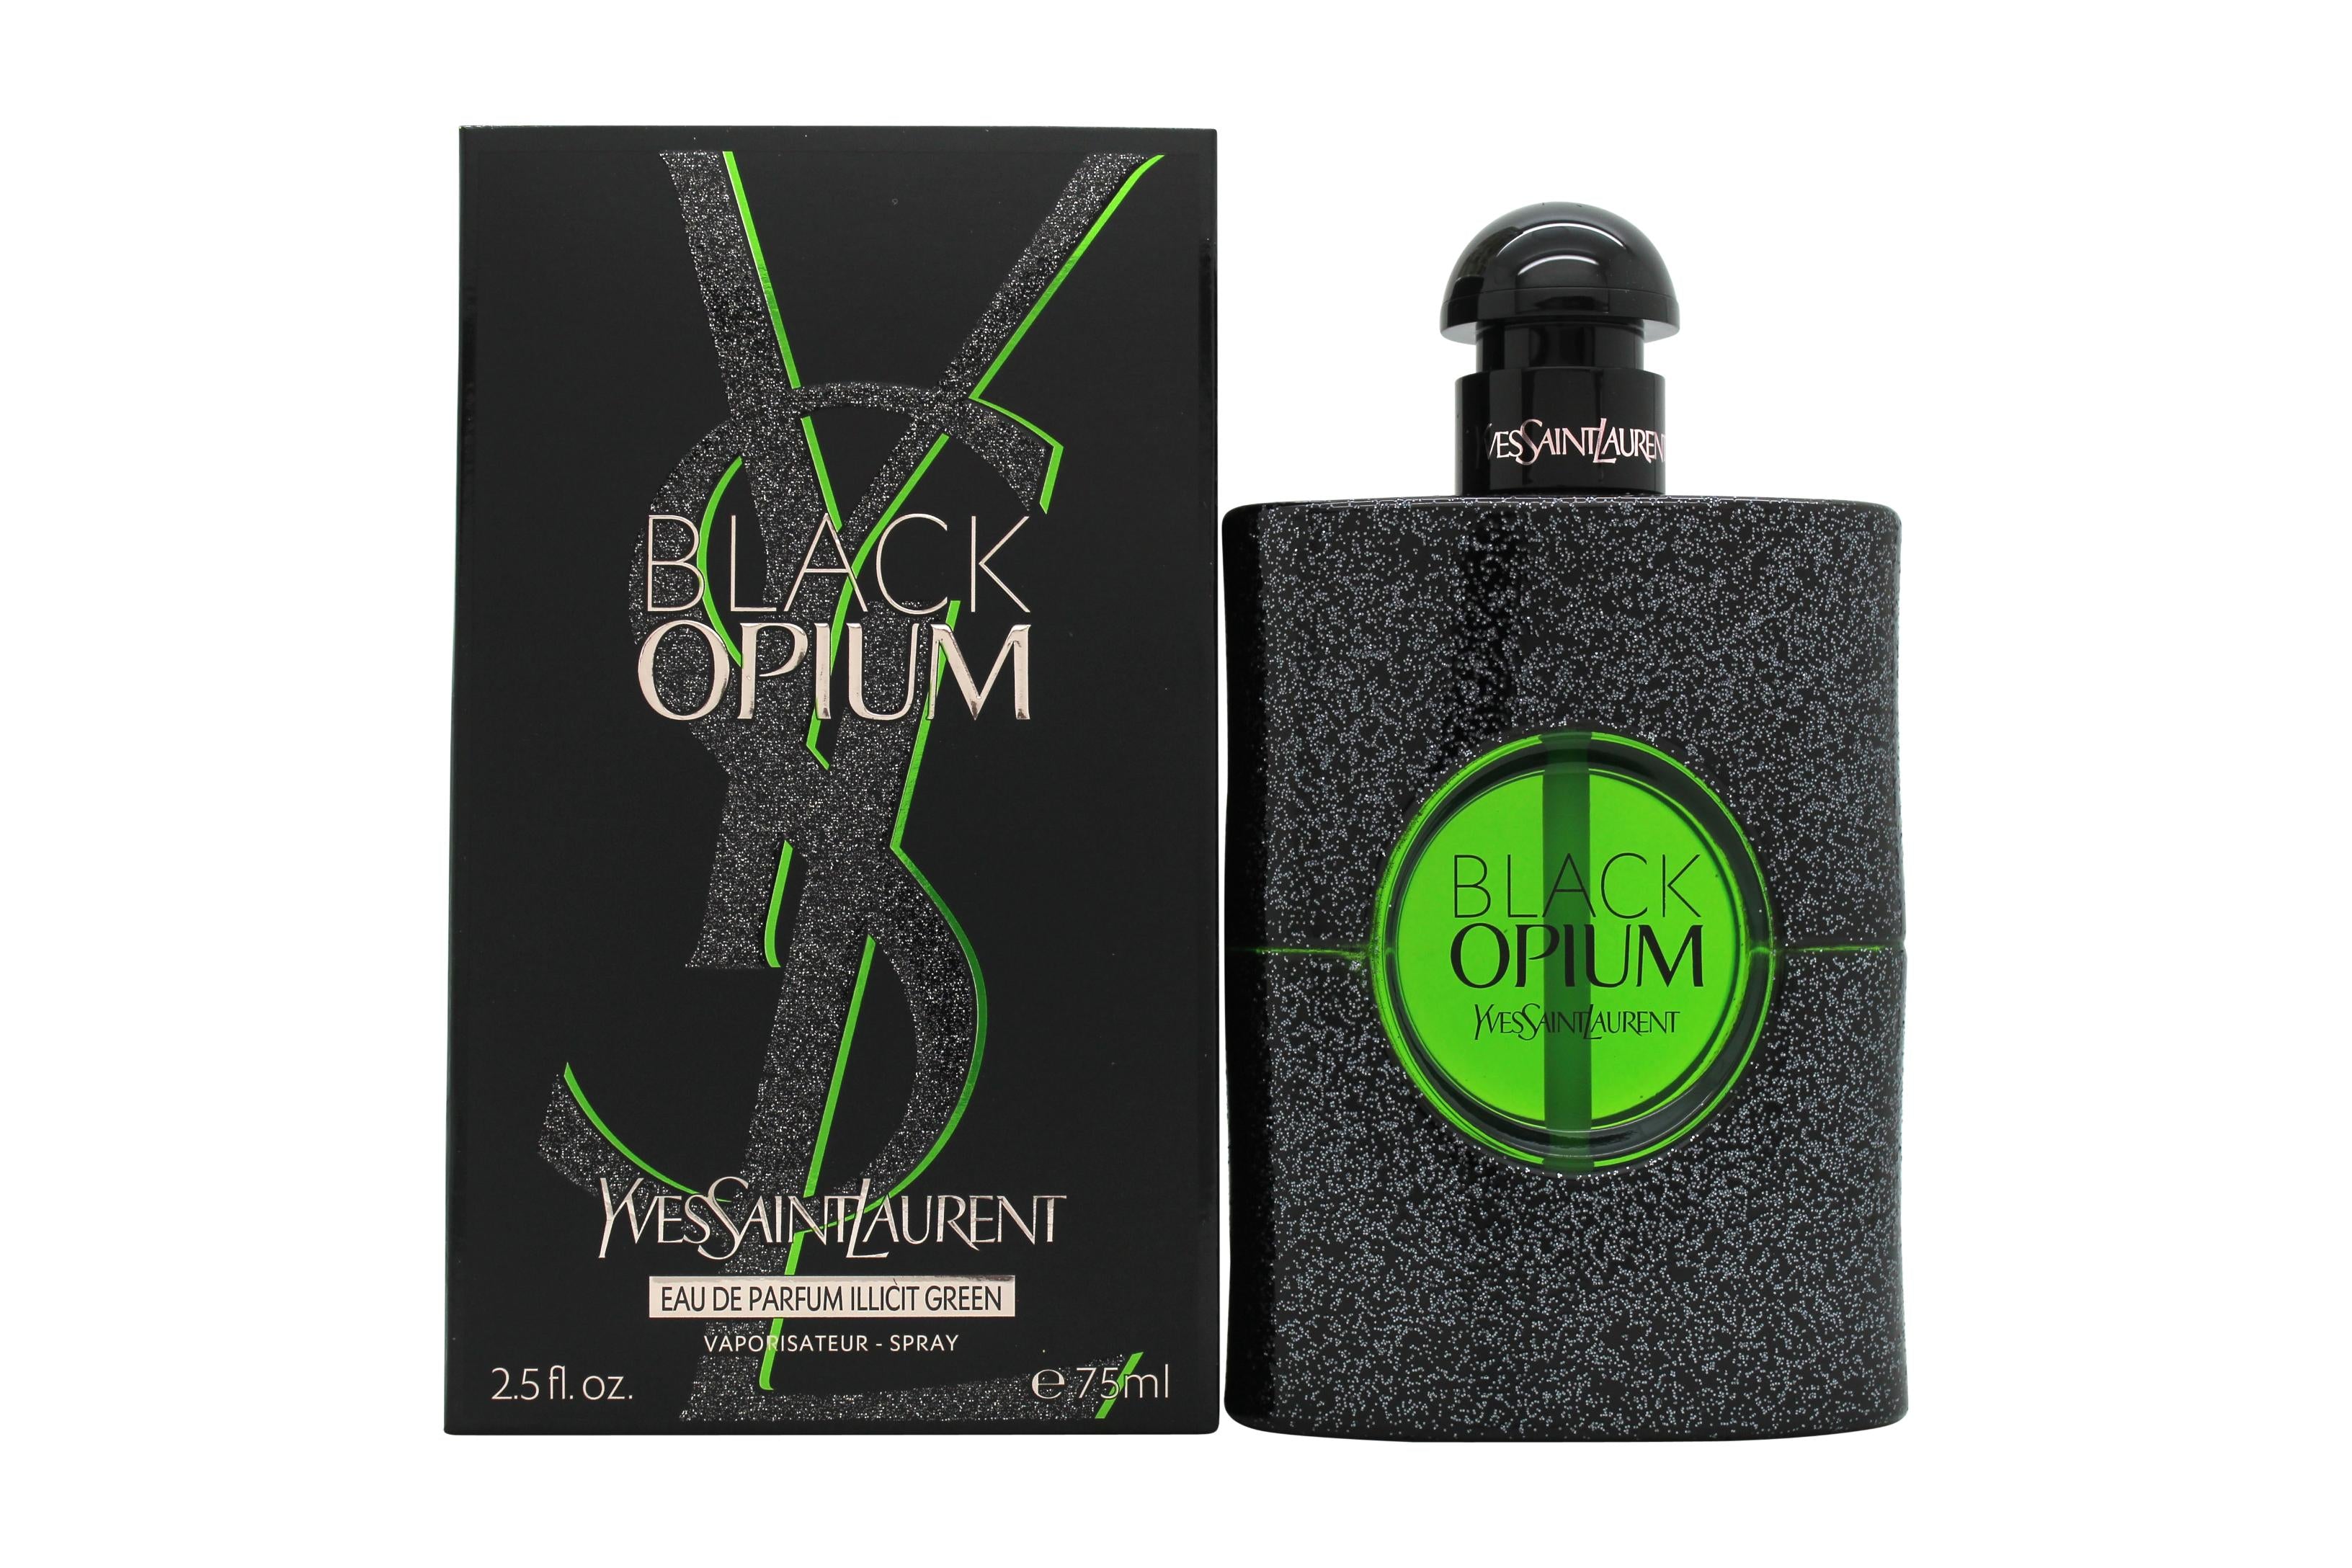 View Yves Saint Laurent Black Opium Illicit Green Eau de Parfum 75ml Spray information